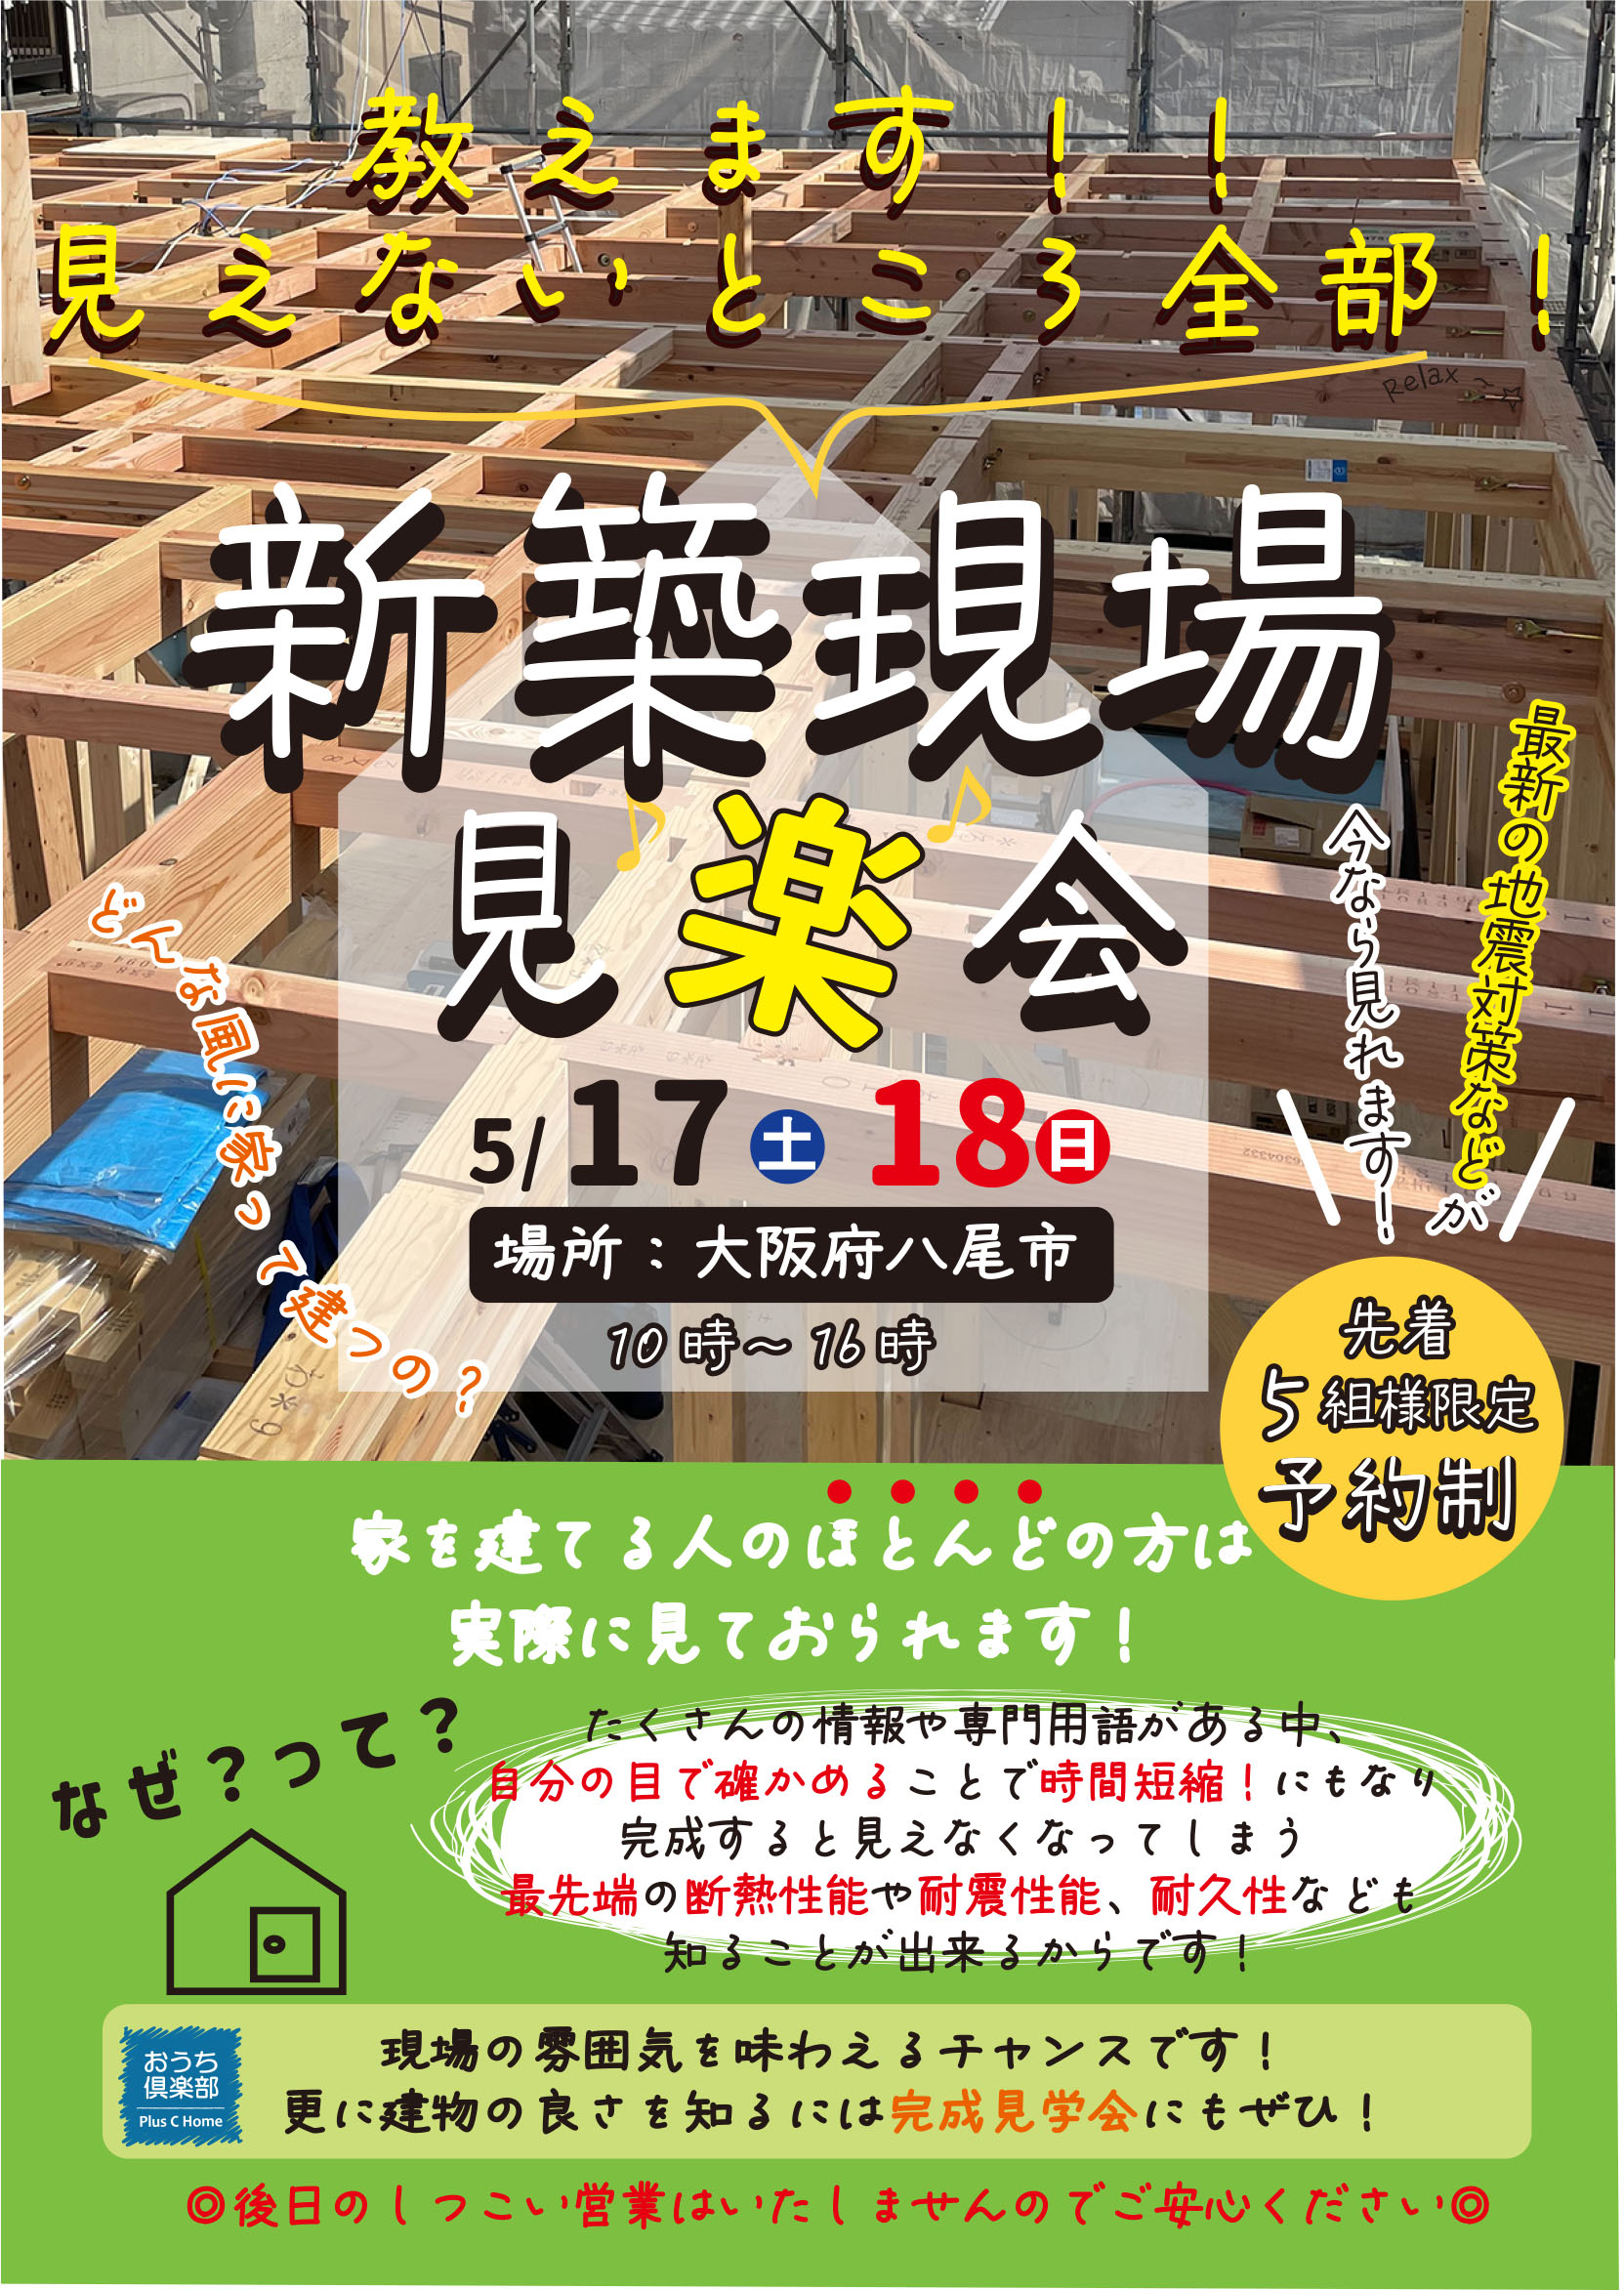 大阪市鶴見区で高断熱・高気密住宅を建てております工務店Plus C Homeが新築現場見学会を開催♪